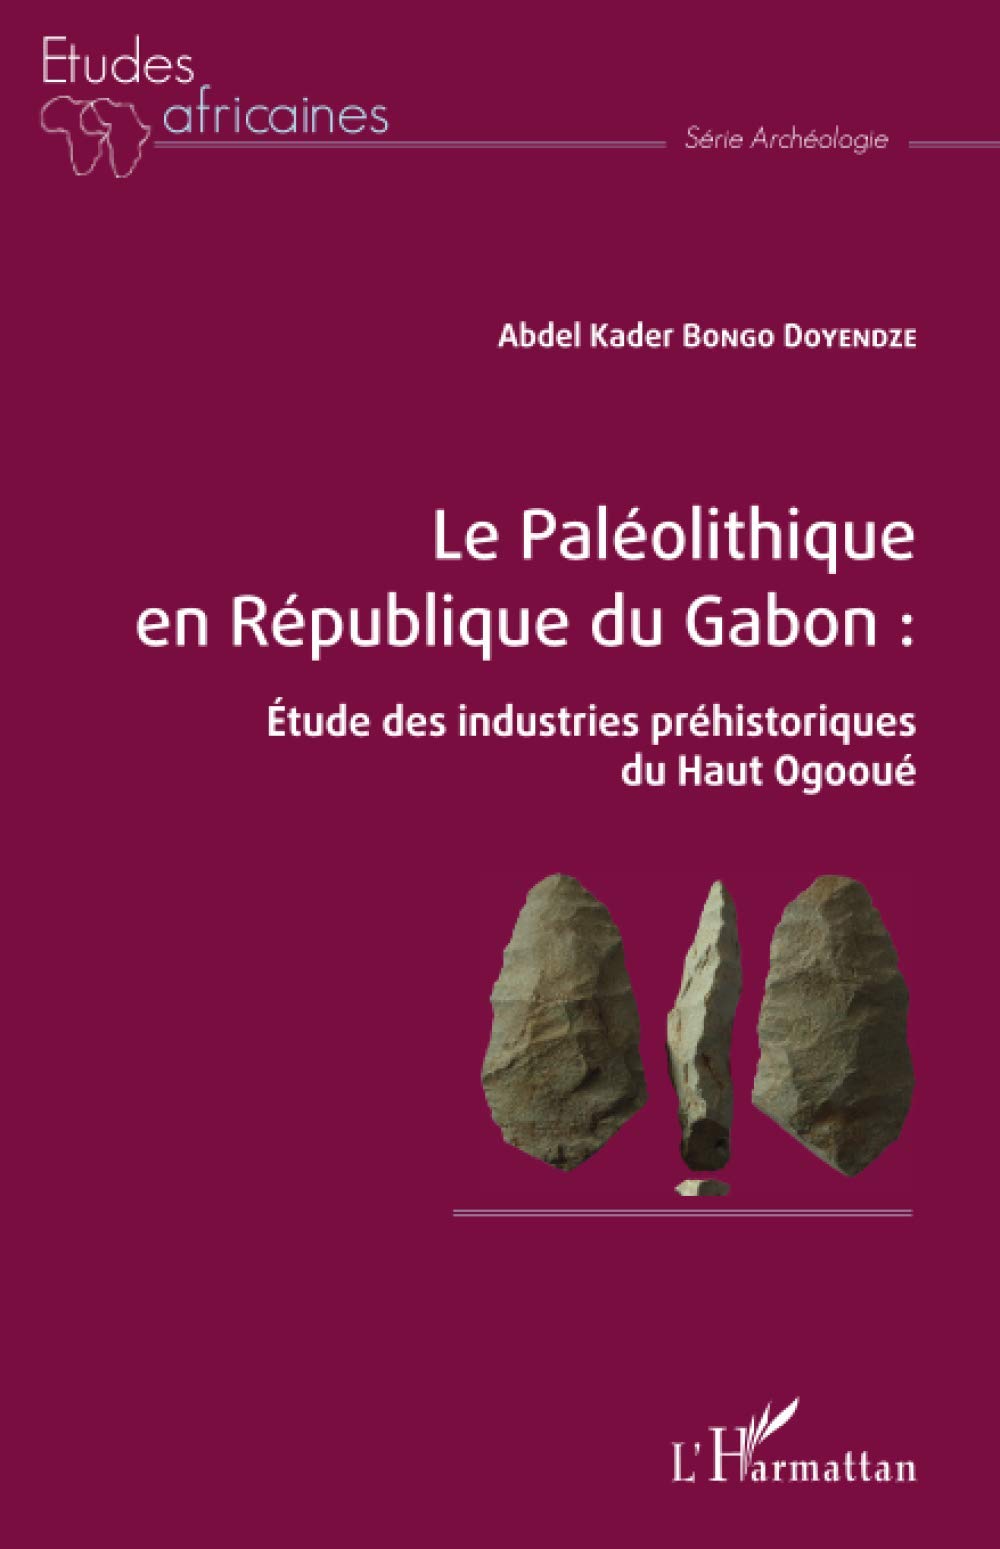 Le Paléolithique en République du Gabon. Étude des industries préhistoriques du Haut Ogooué, 2021, 322 p.